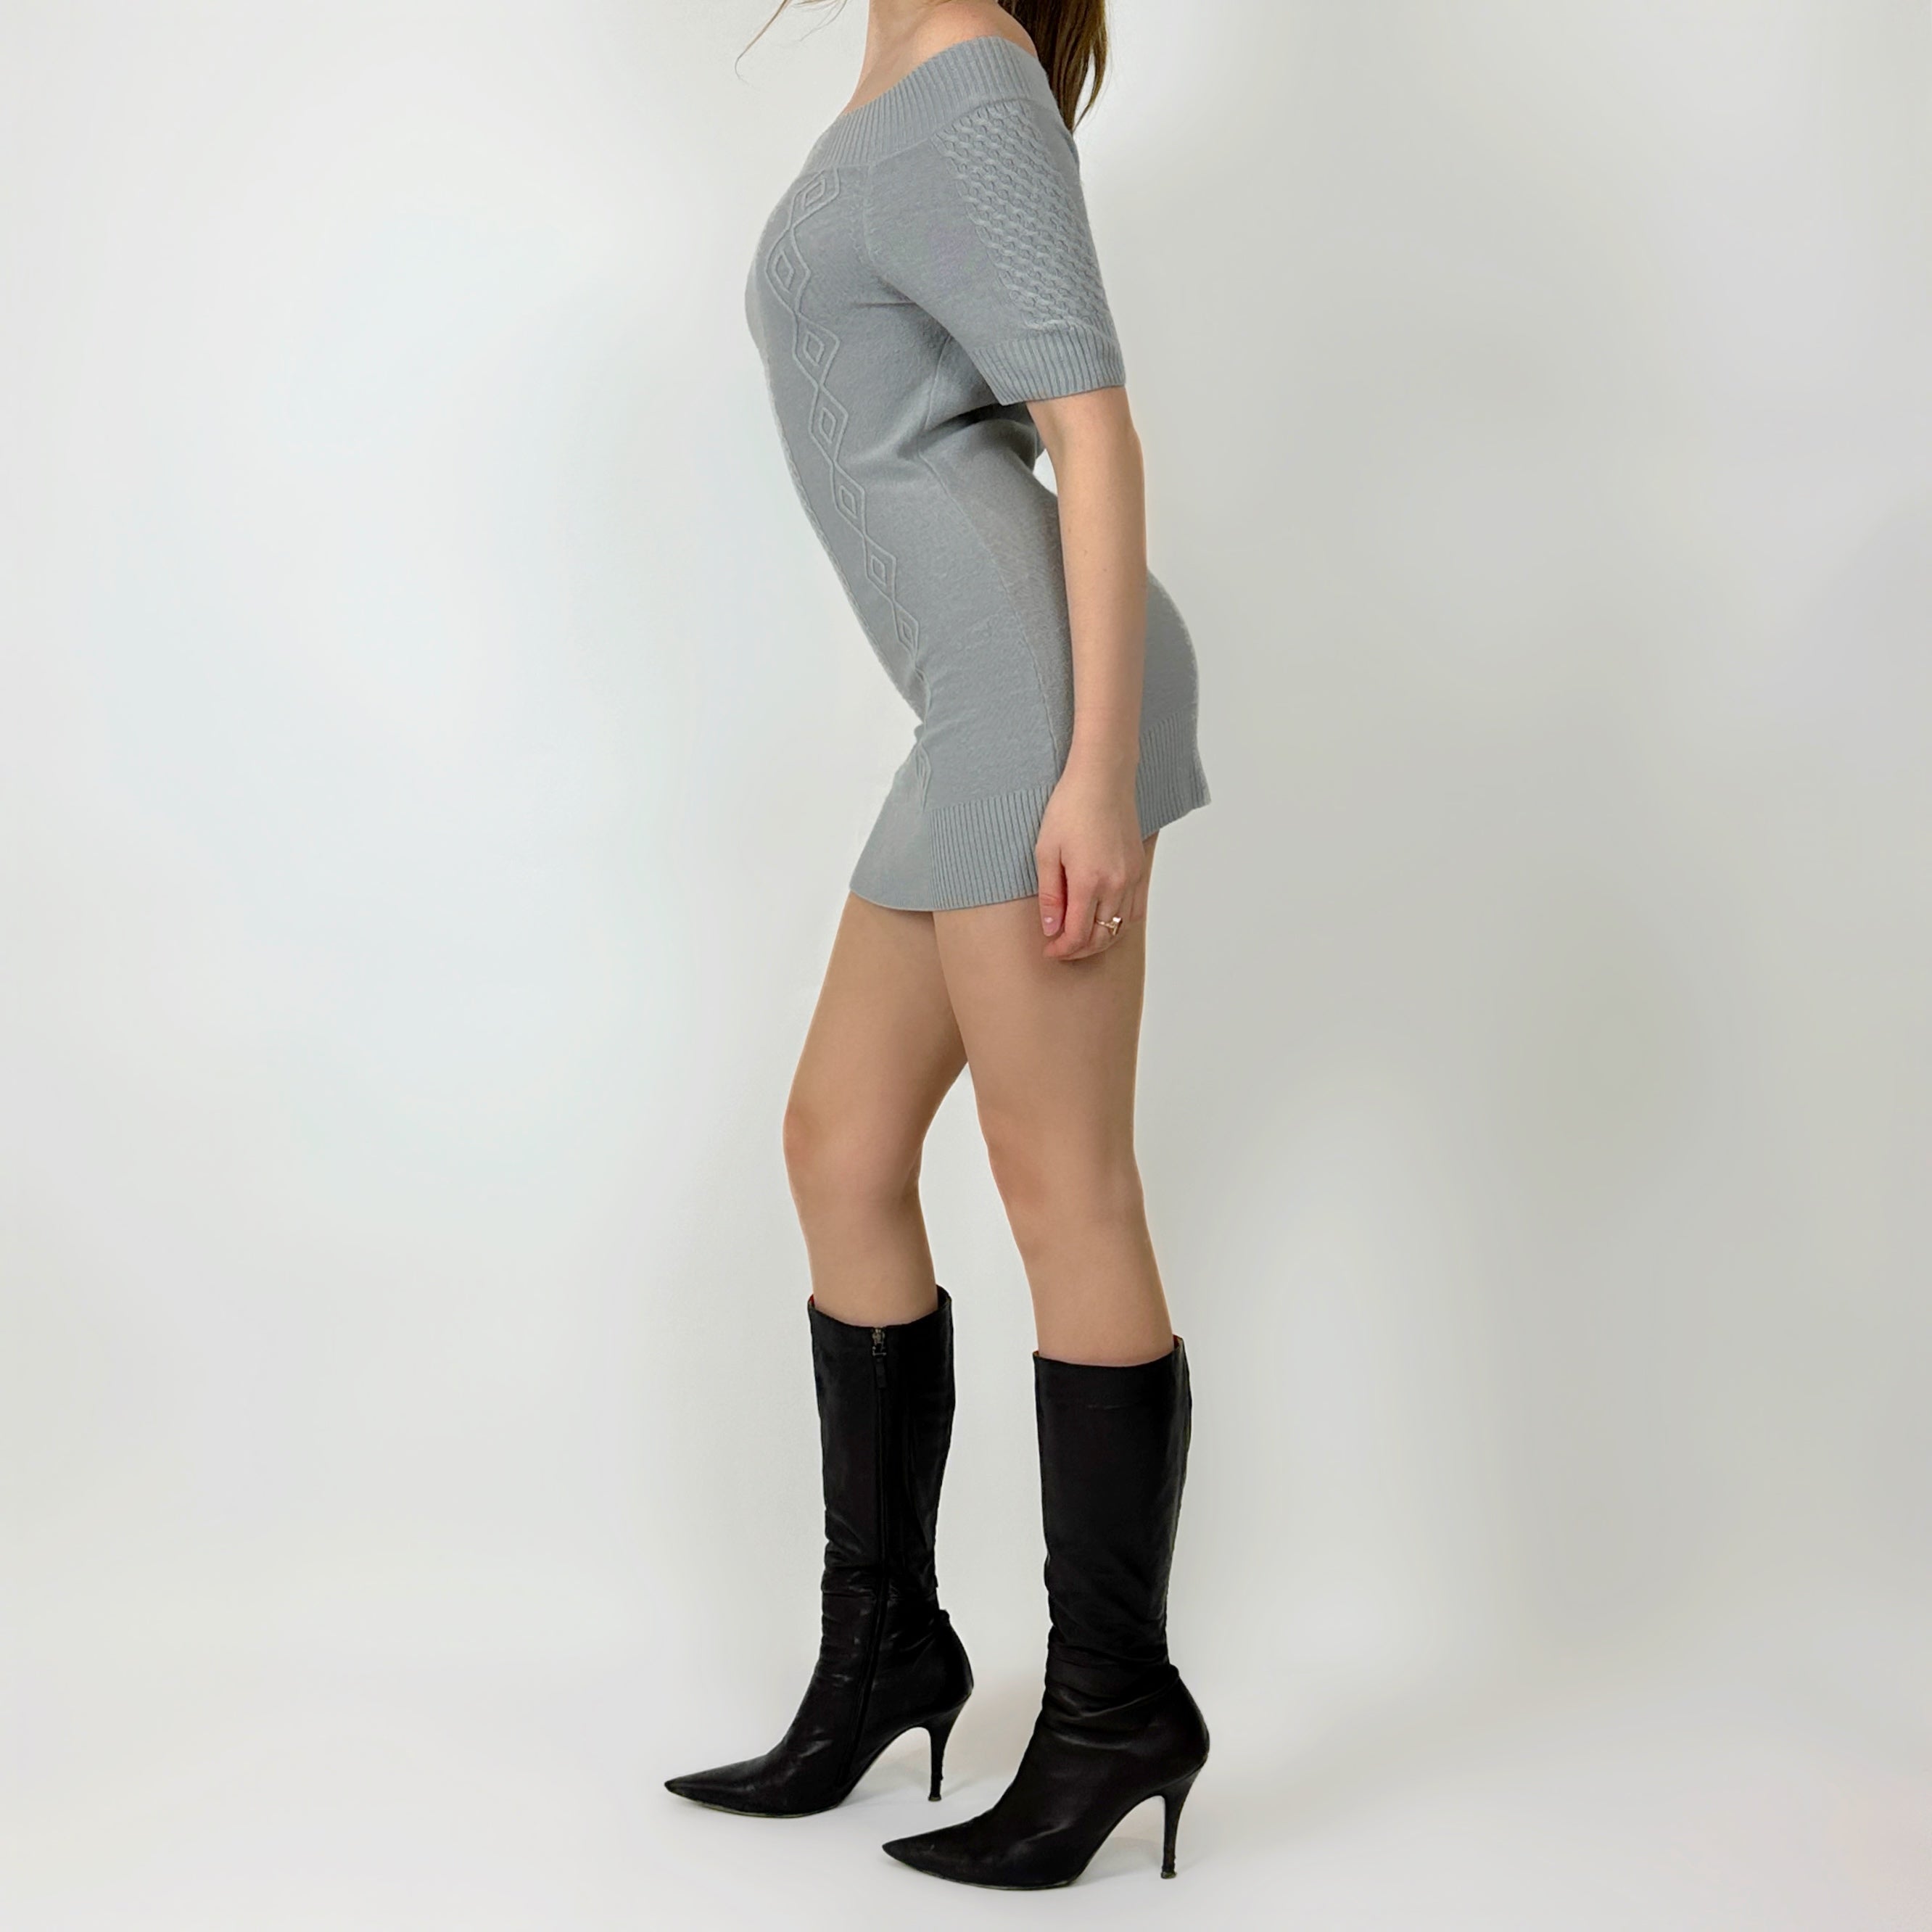 00's Grey Knit Mini Dress (S)